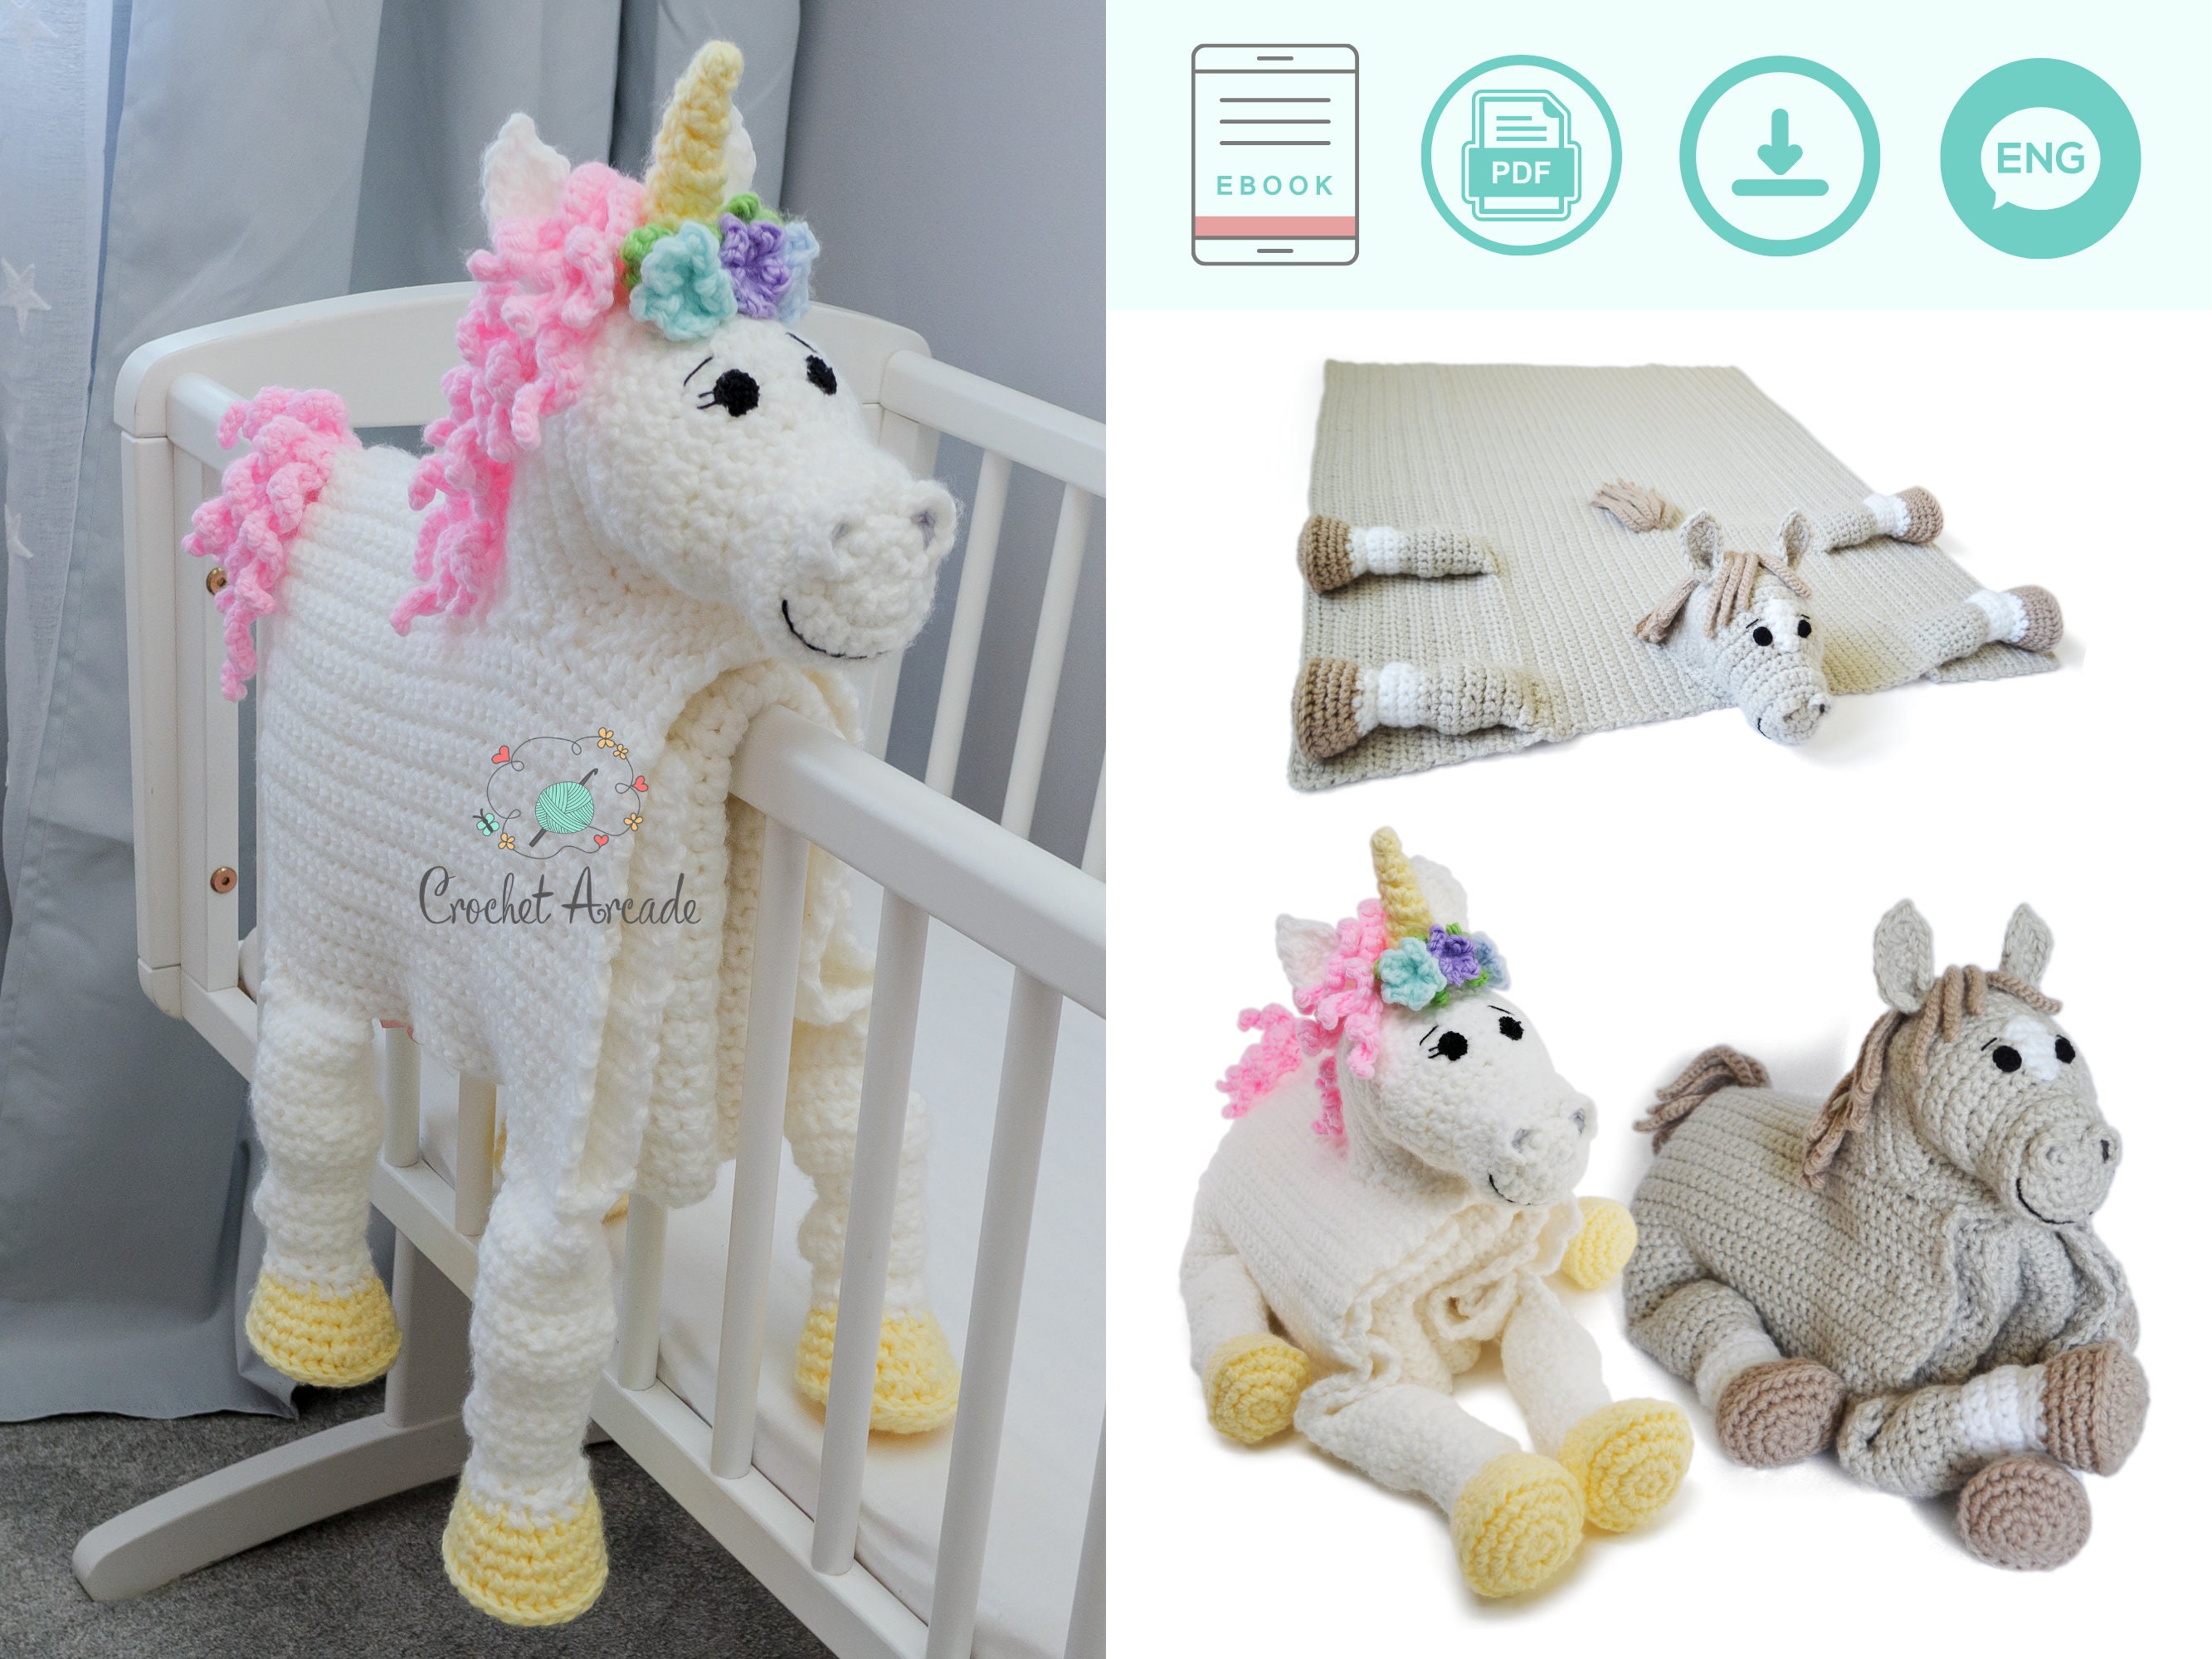 BoHo Unicorn Crochet Applique, Pre-made Animal Applique, Crochet